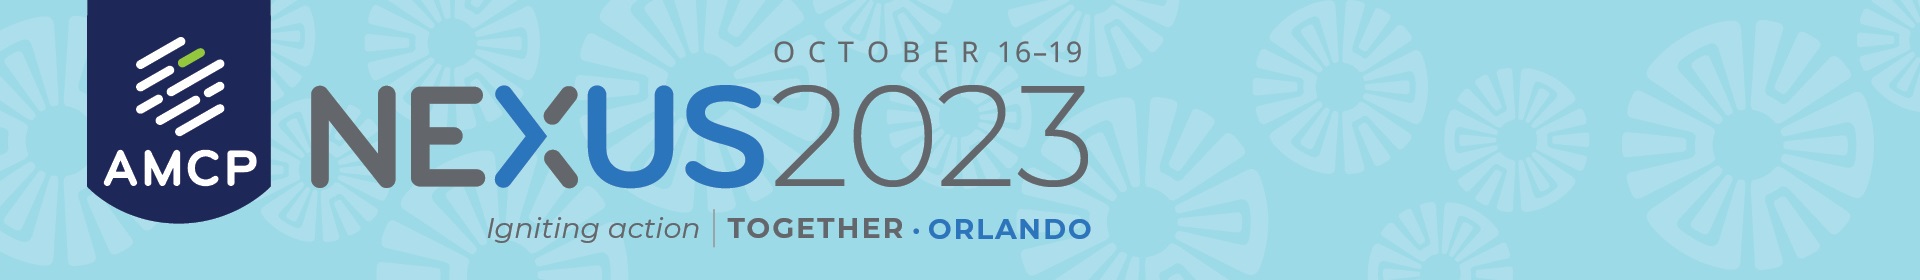 Nexus 2023 Event Banner